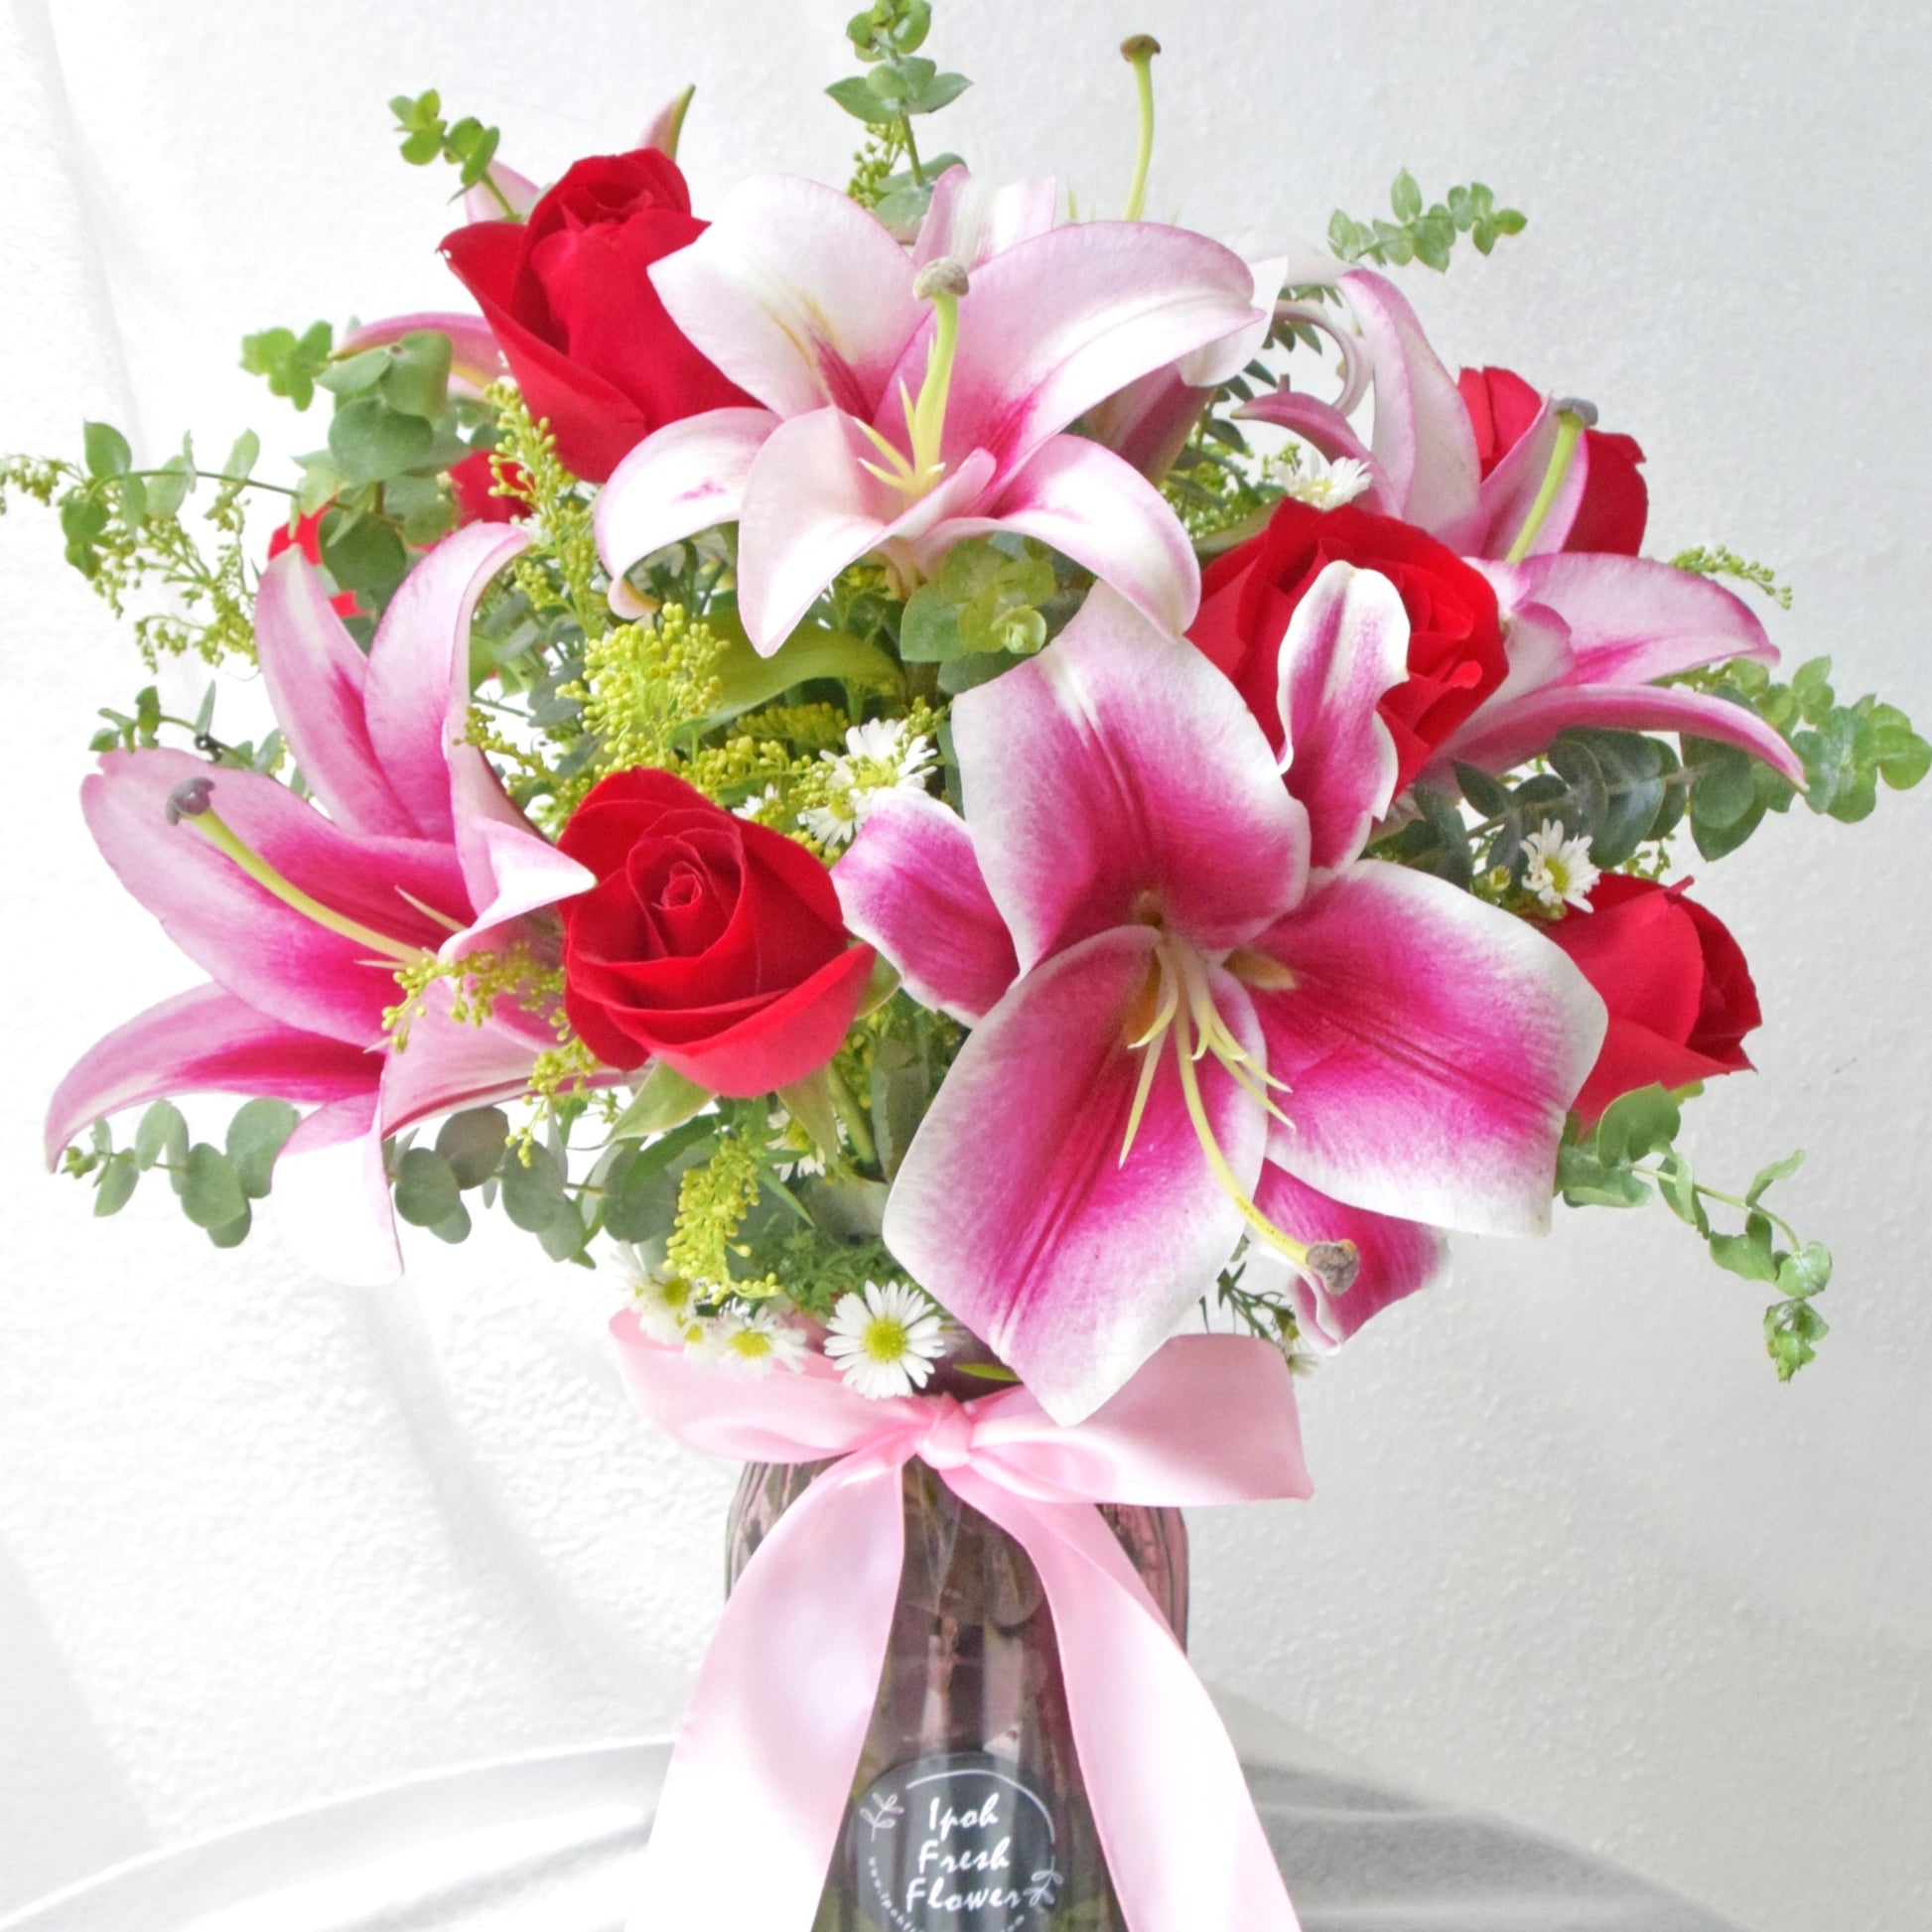 Rosa Lily| Vase Arrangement| Fresh Flower In A Vase| Same Day Delivery